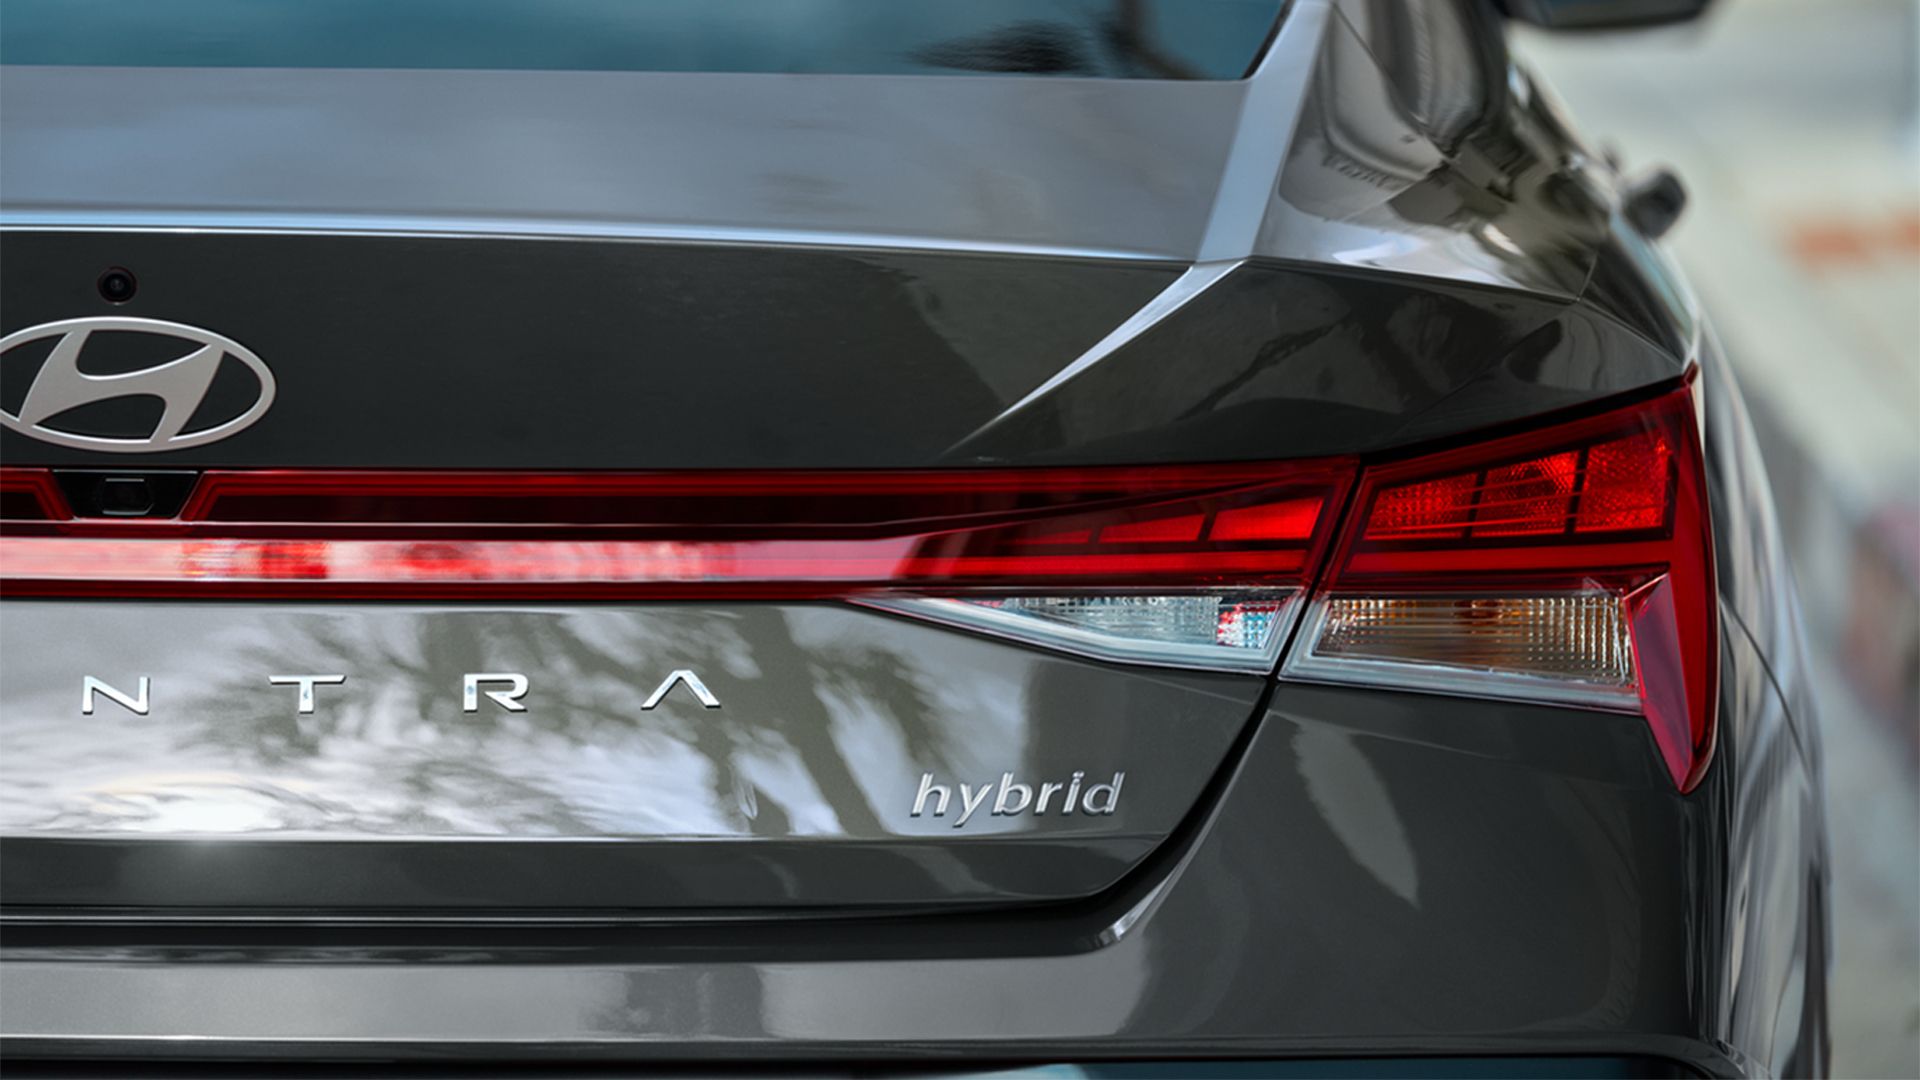 Hyundai Elantra Hybrid - Back head on